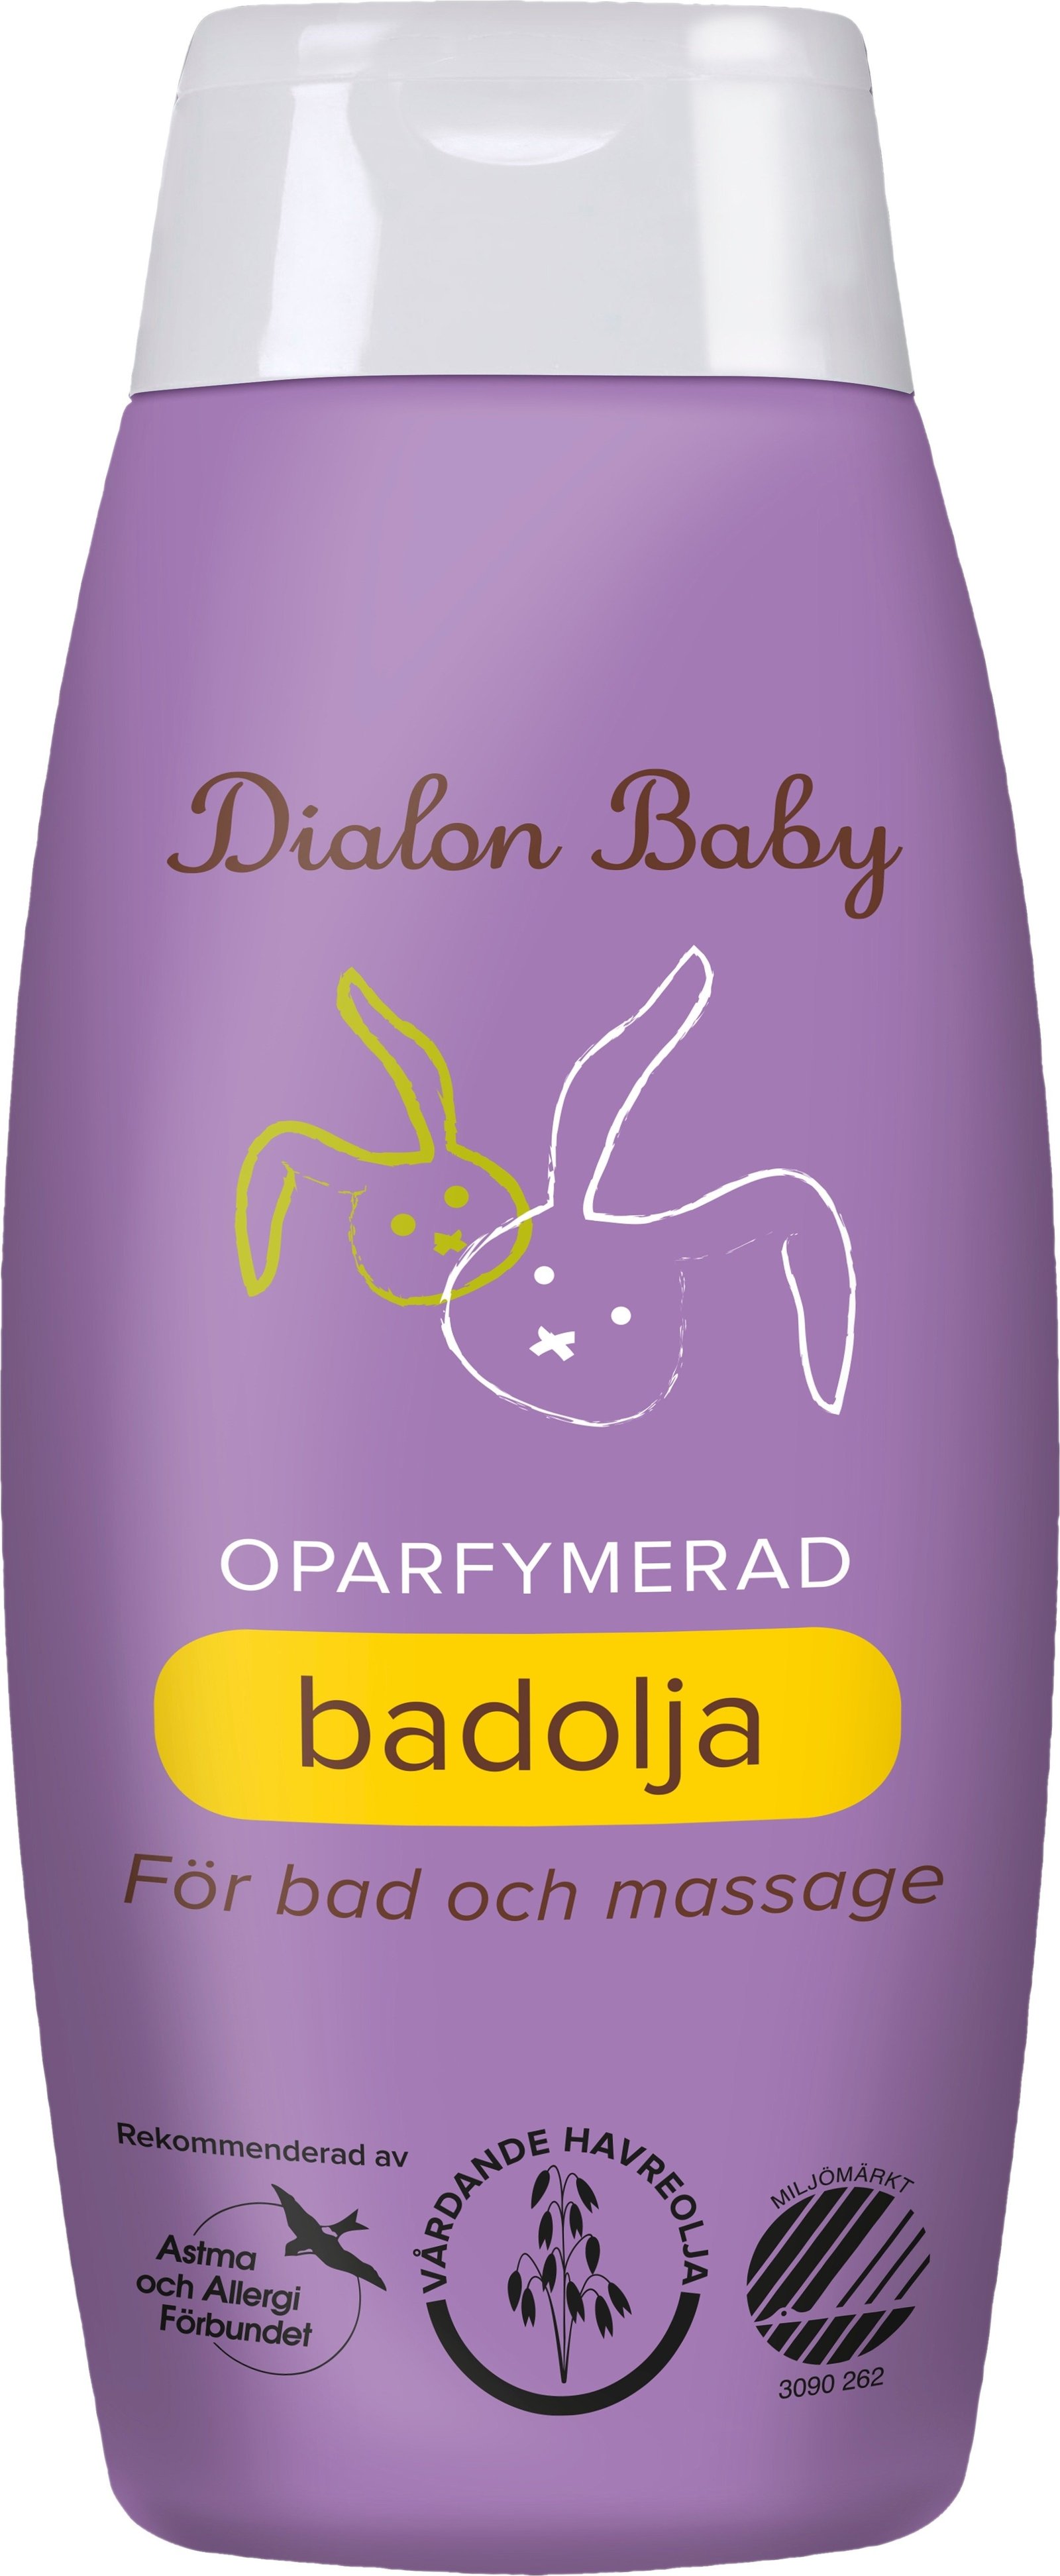 Dialon Baby badolja 150 ml